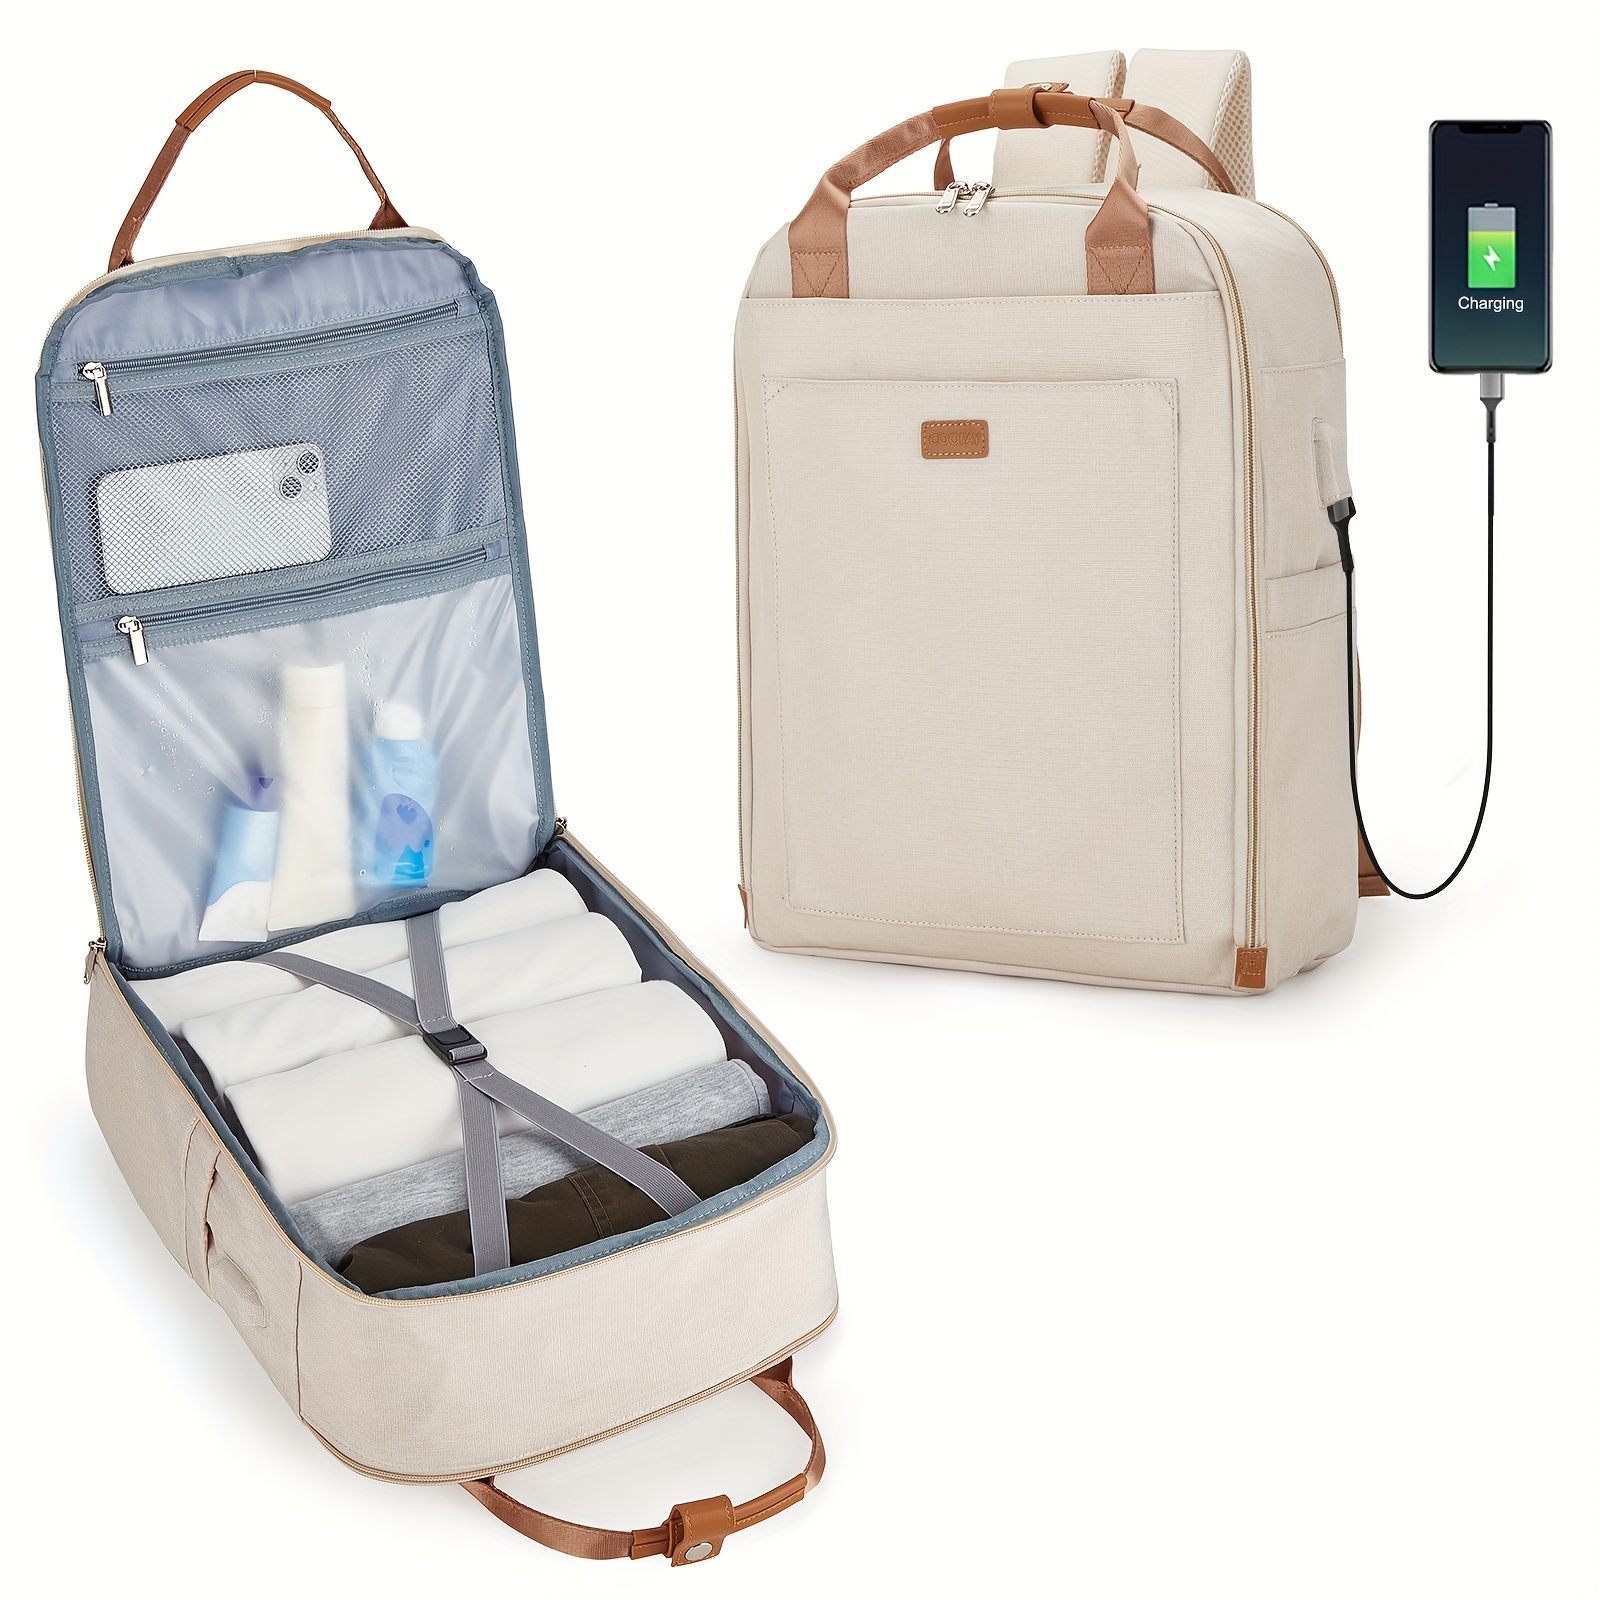  Mochila escolar, mochila para portátil de 17.3 pulgadas, mochila  para adolescentes y niños, mochila universitaria con puerto de carga USB,  resistente al agua : Electrónica